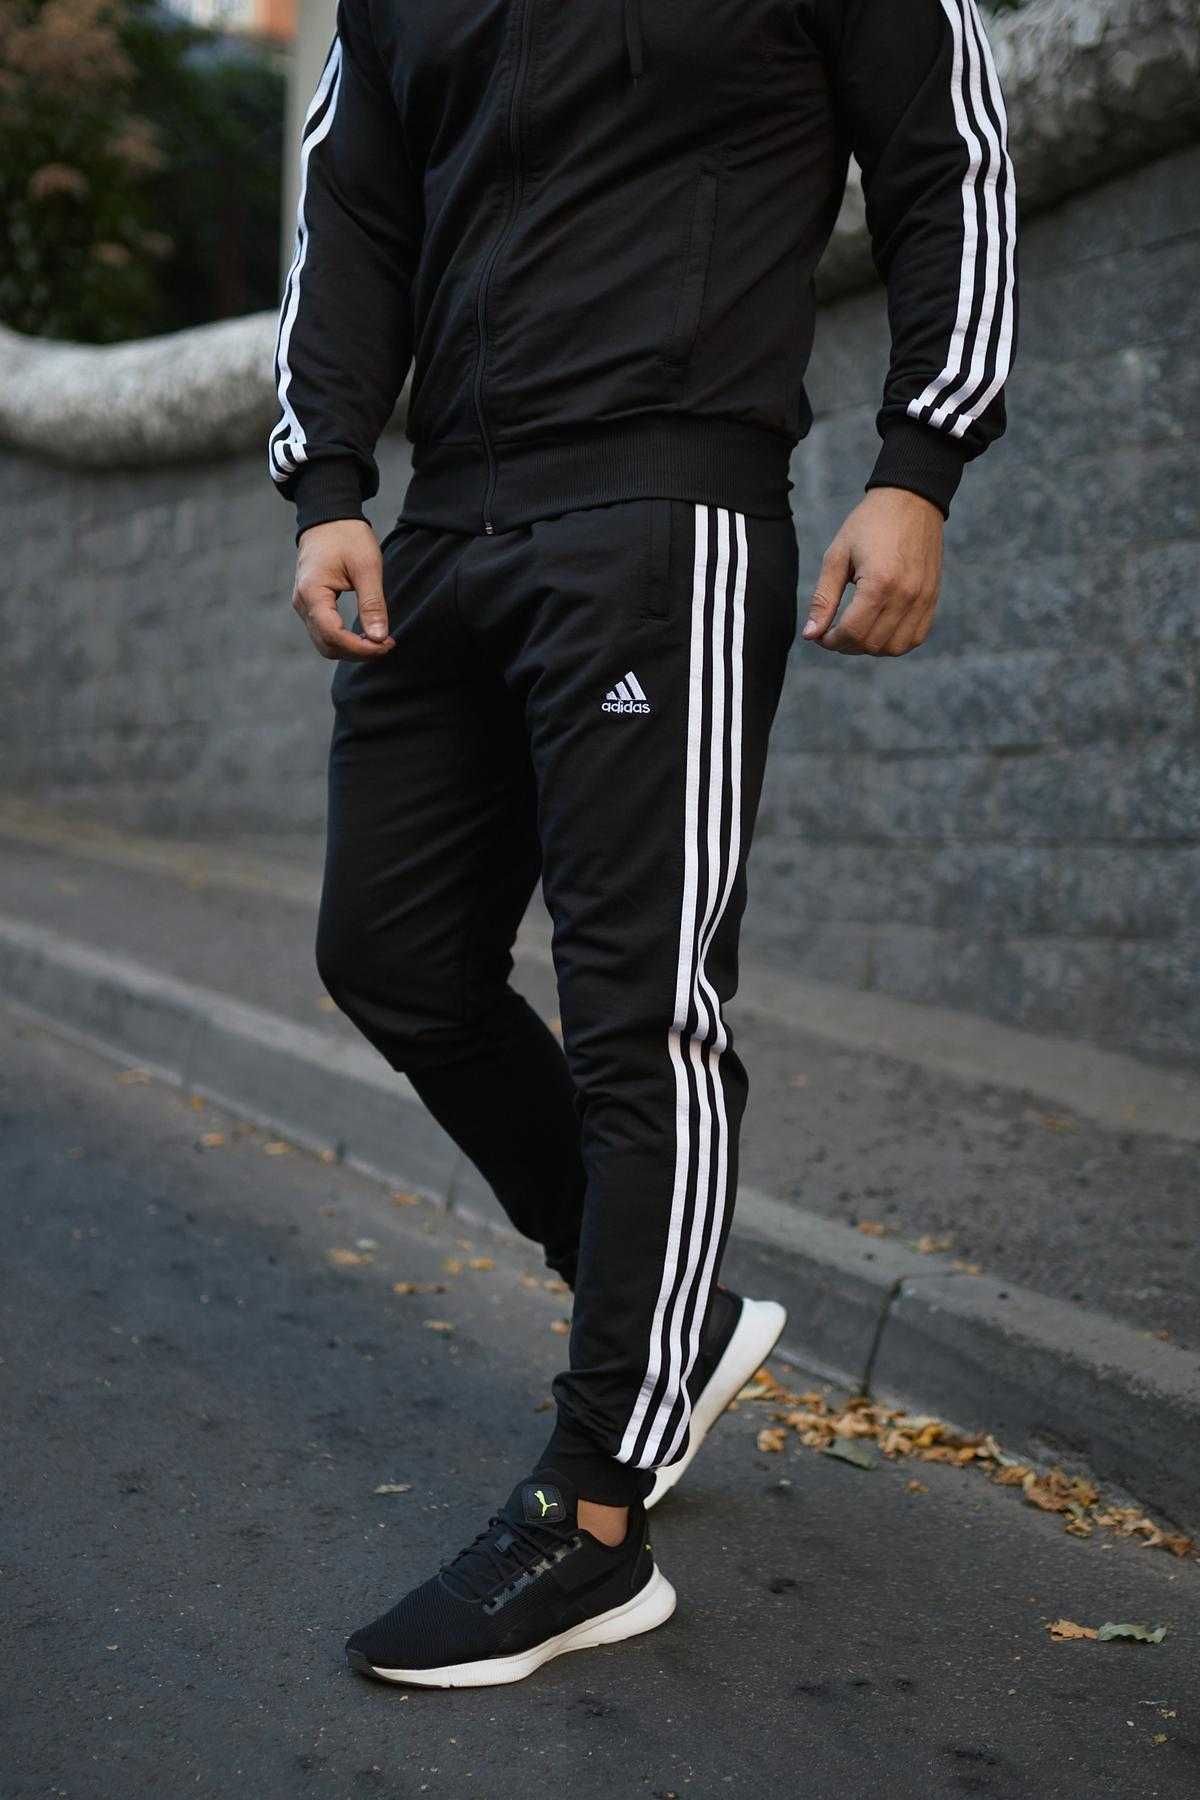 Споривный костюм мужской осенний весенний Adidas барсетка в подарок